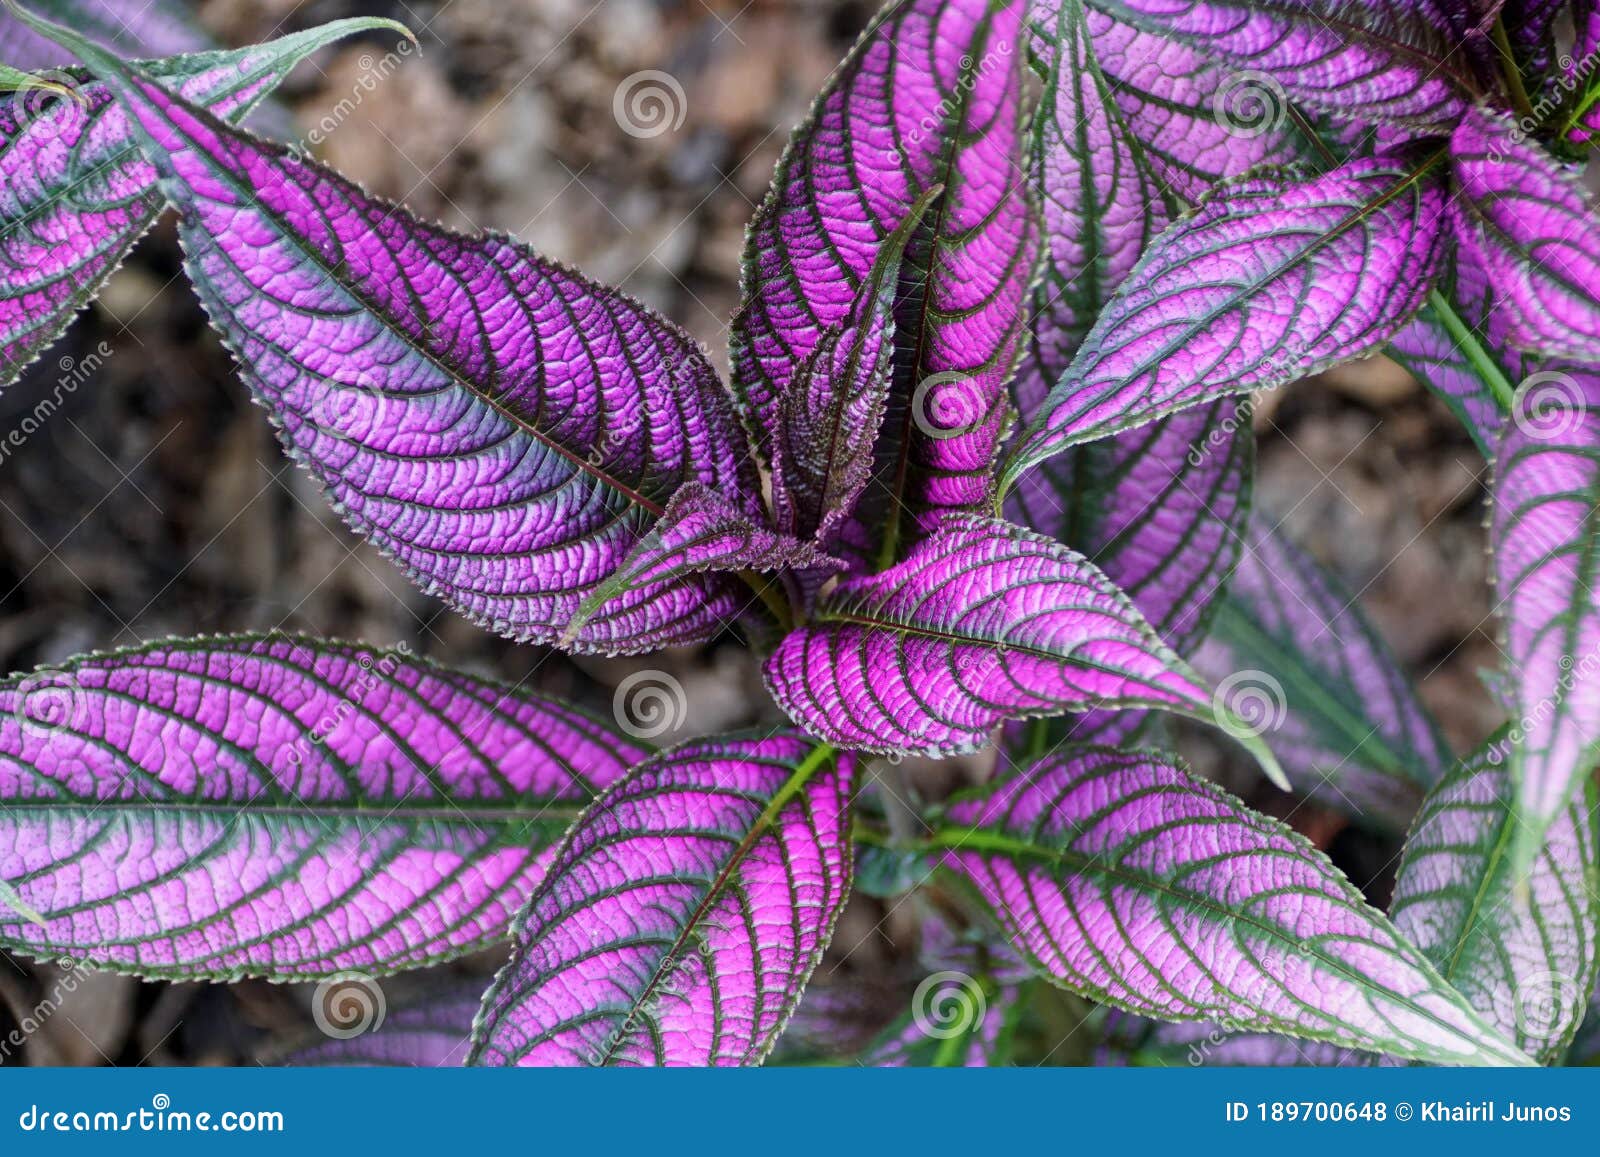 紫叶波斯盾植物库存照片 图片包括有关闭 从事园艺 回归线 要素 自然 工厂 模式 紫色